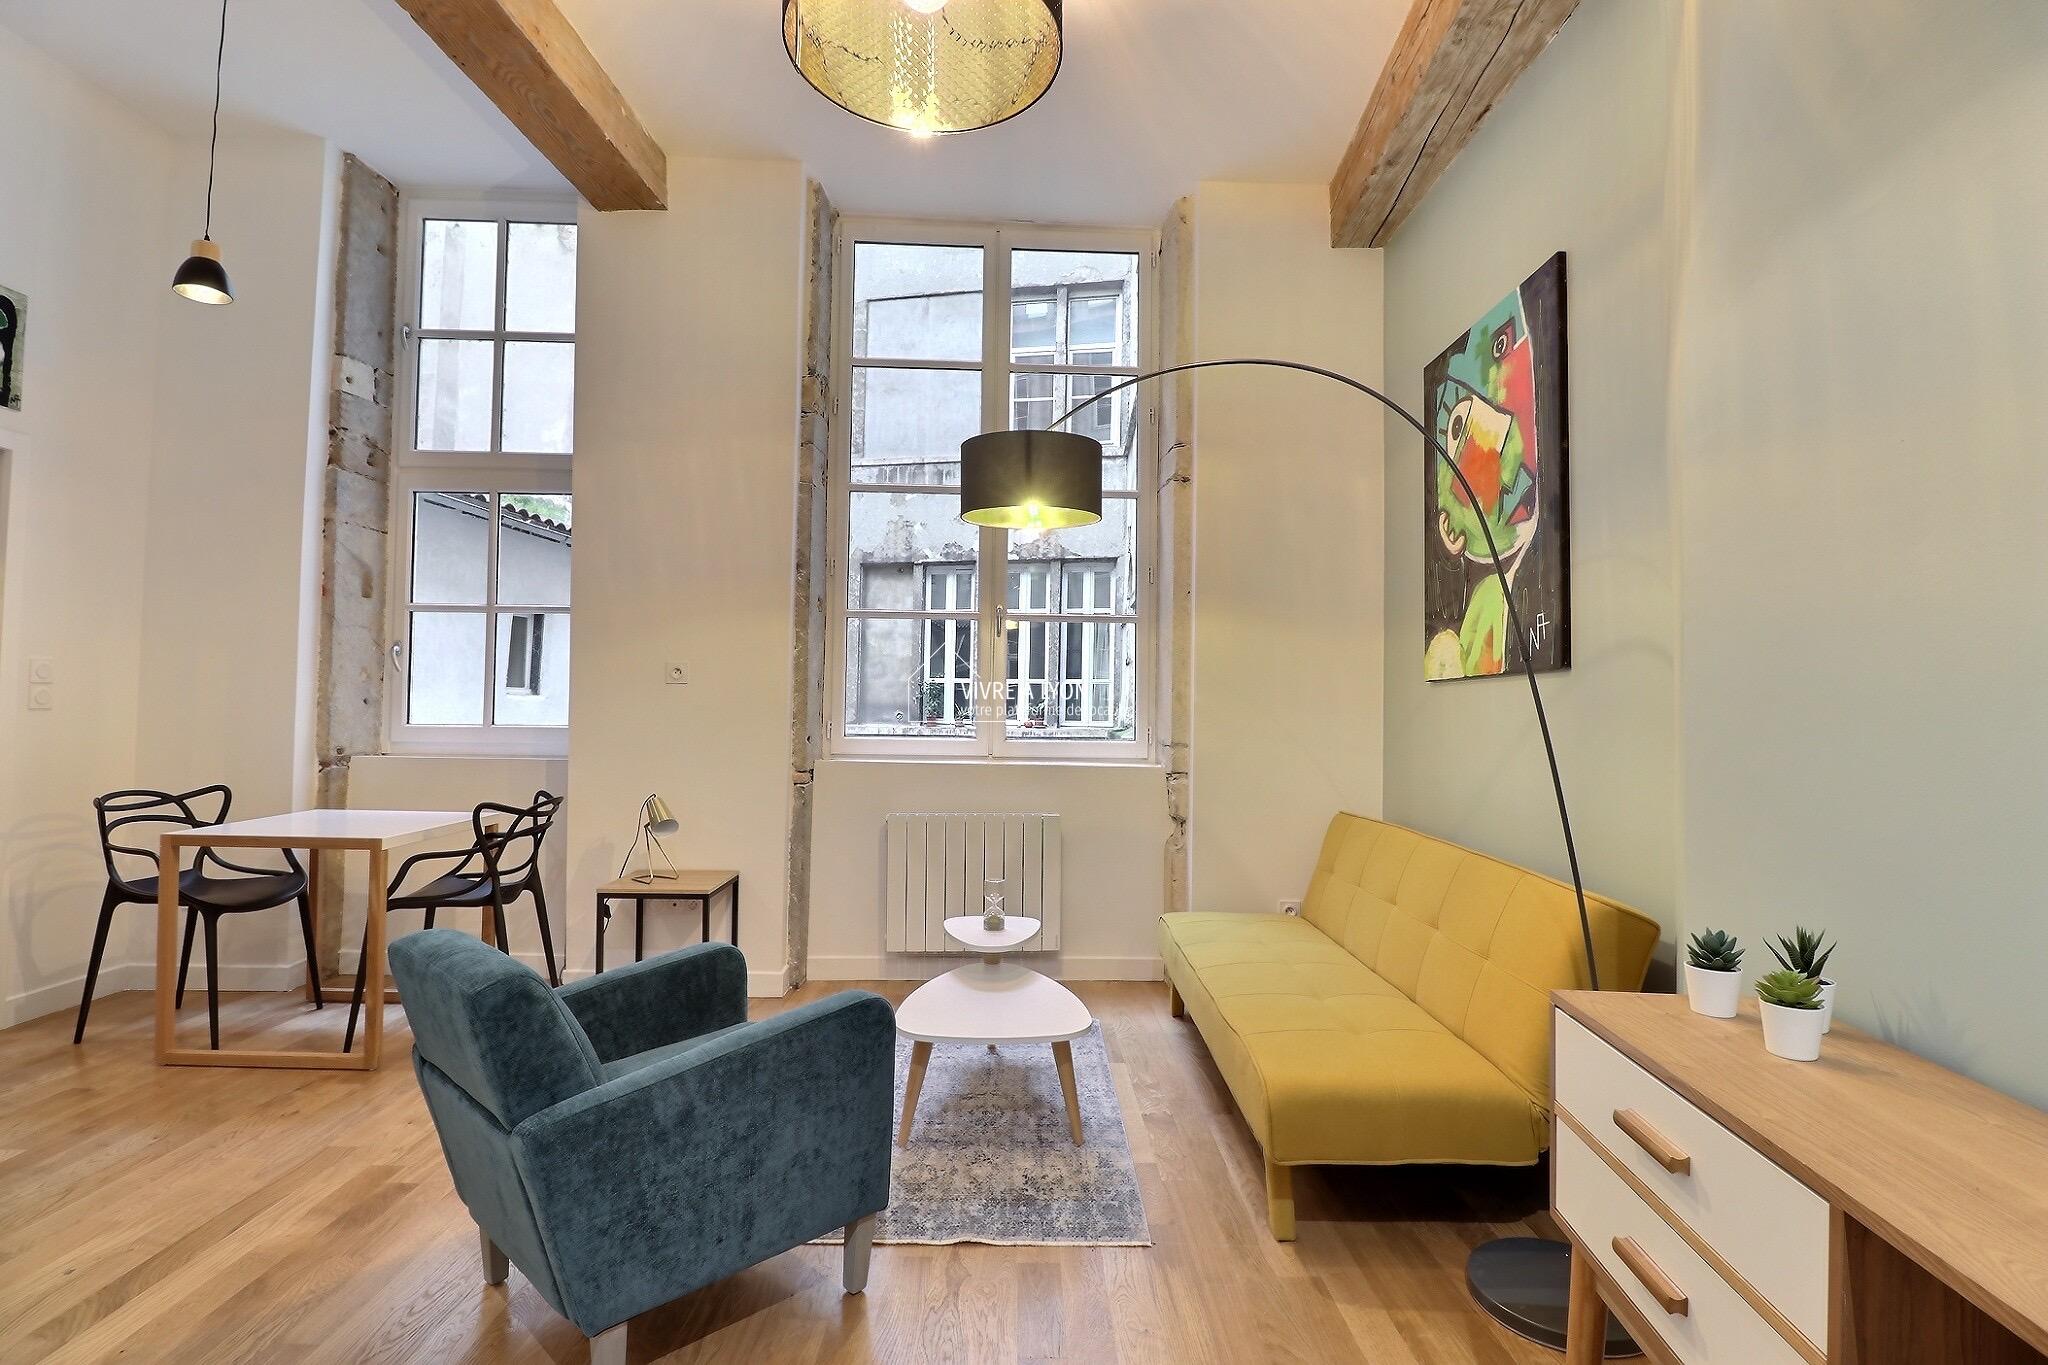 Location appartement meublé Lyon - salon